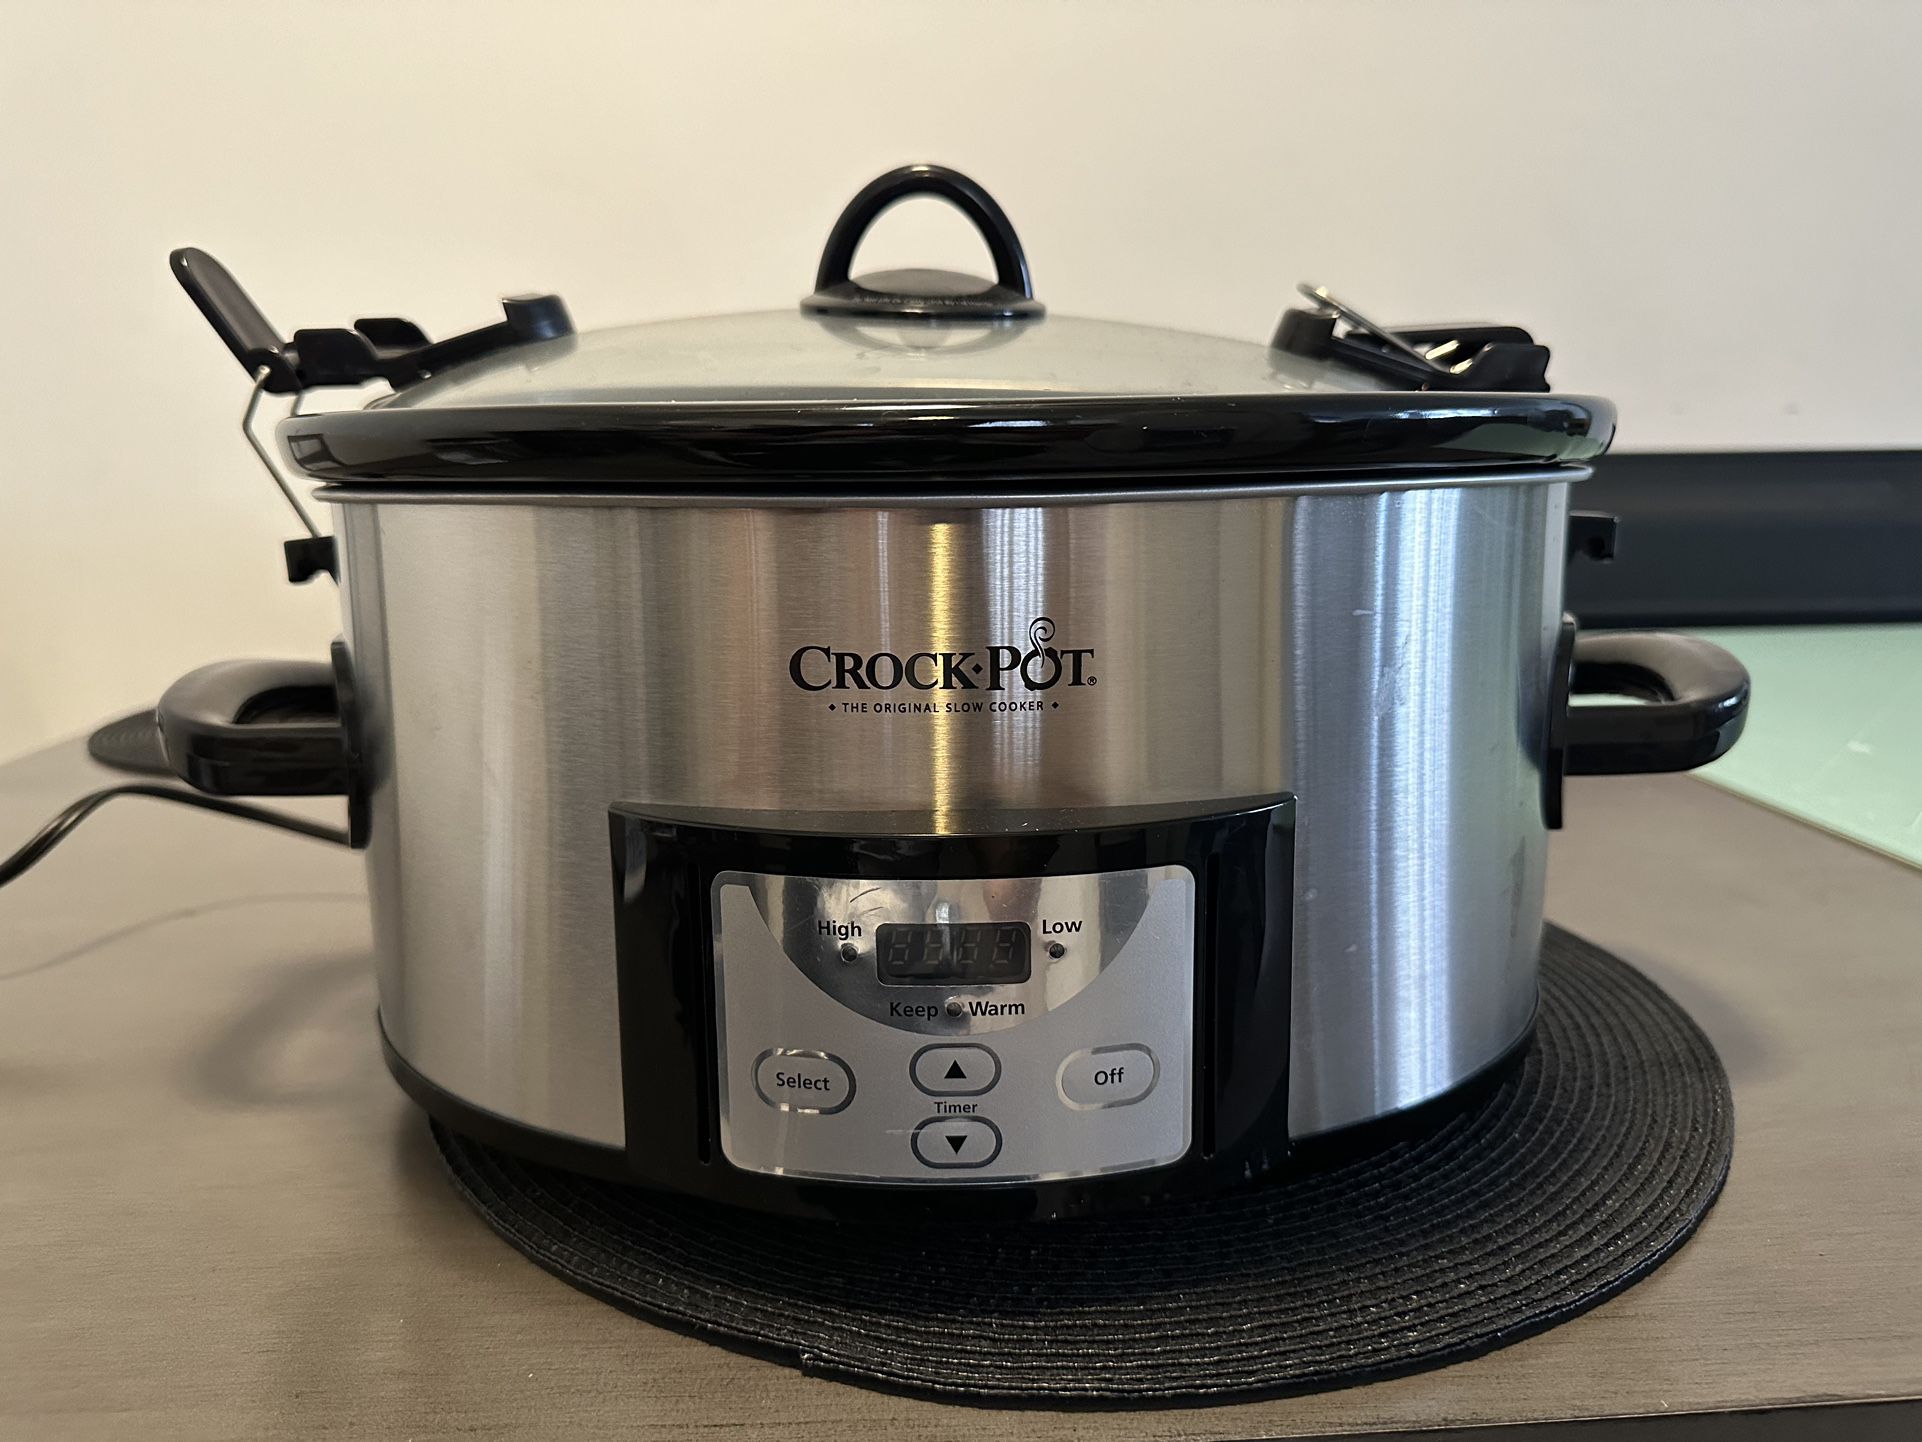 Crock-Pot 6 Quart Slow Cooker